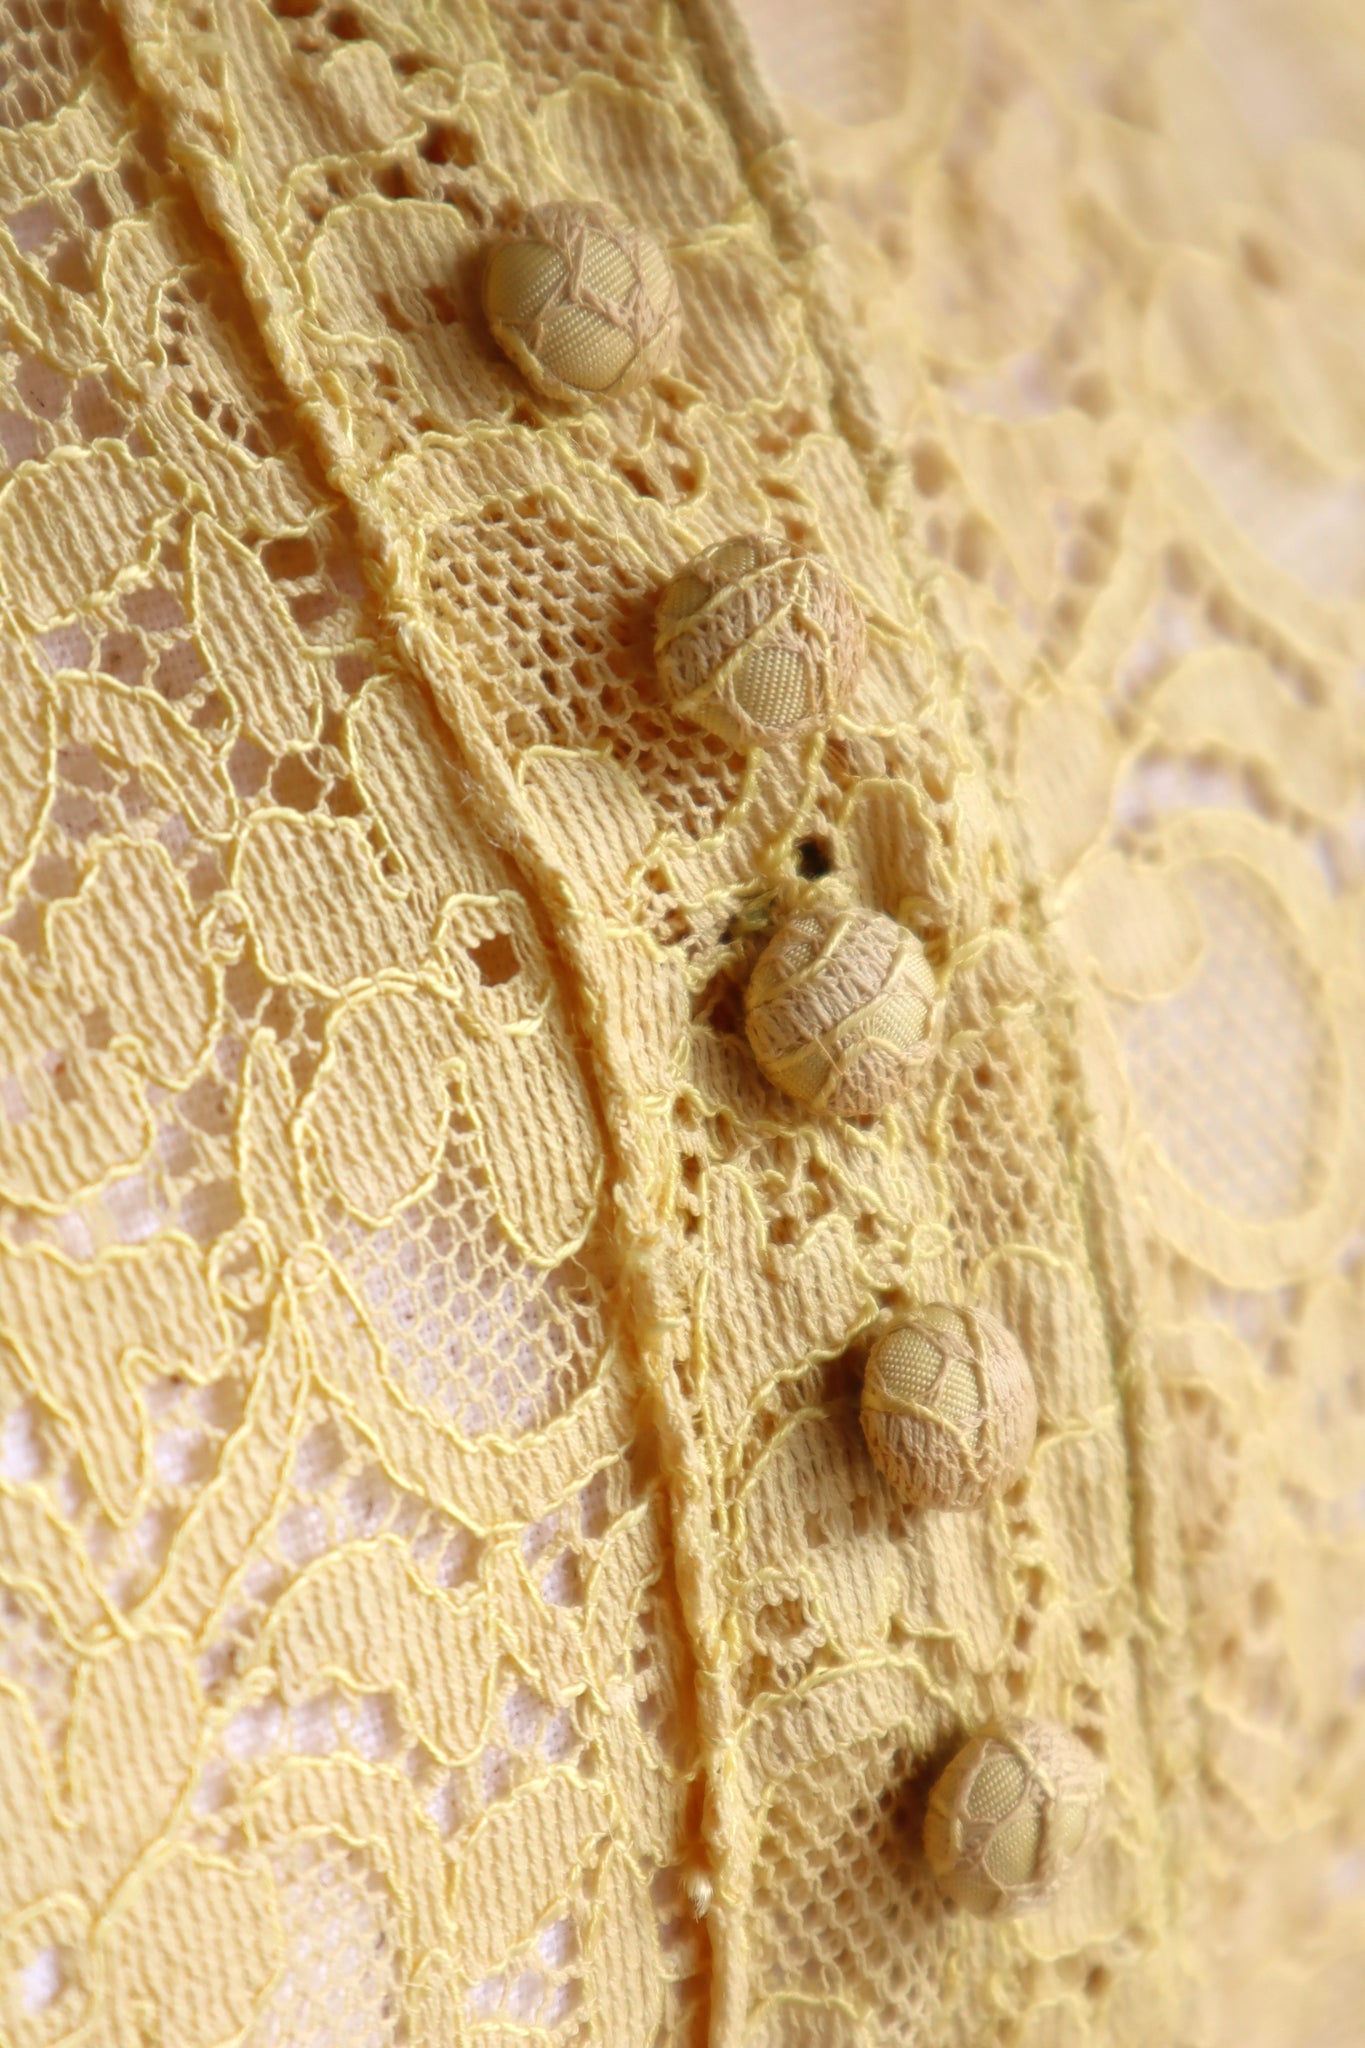 1940s Cotton Lace Dress Size S